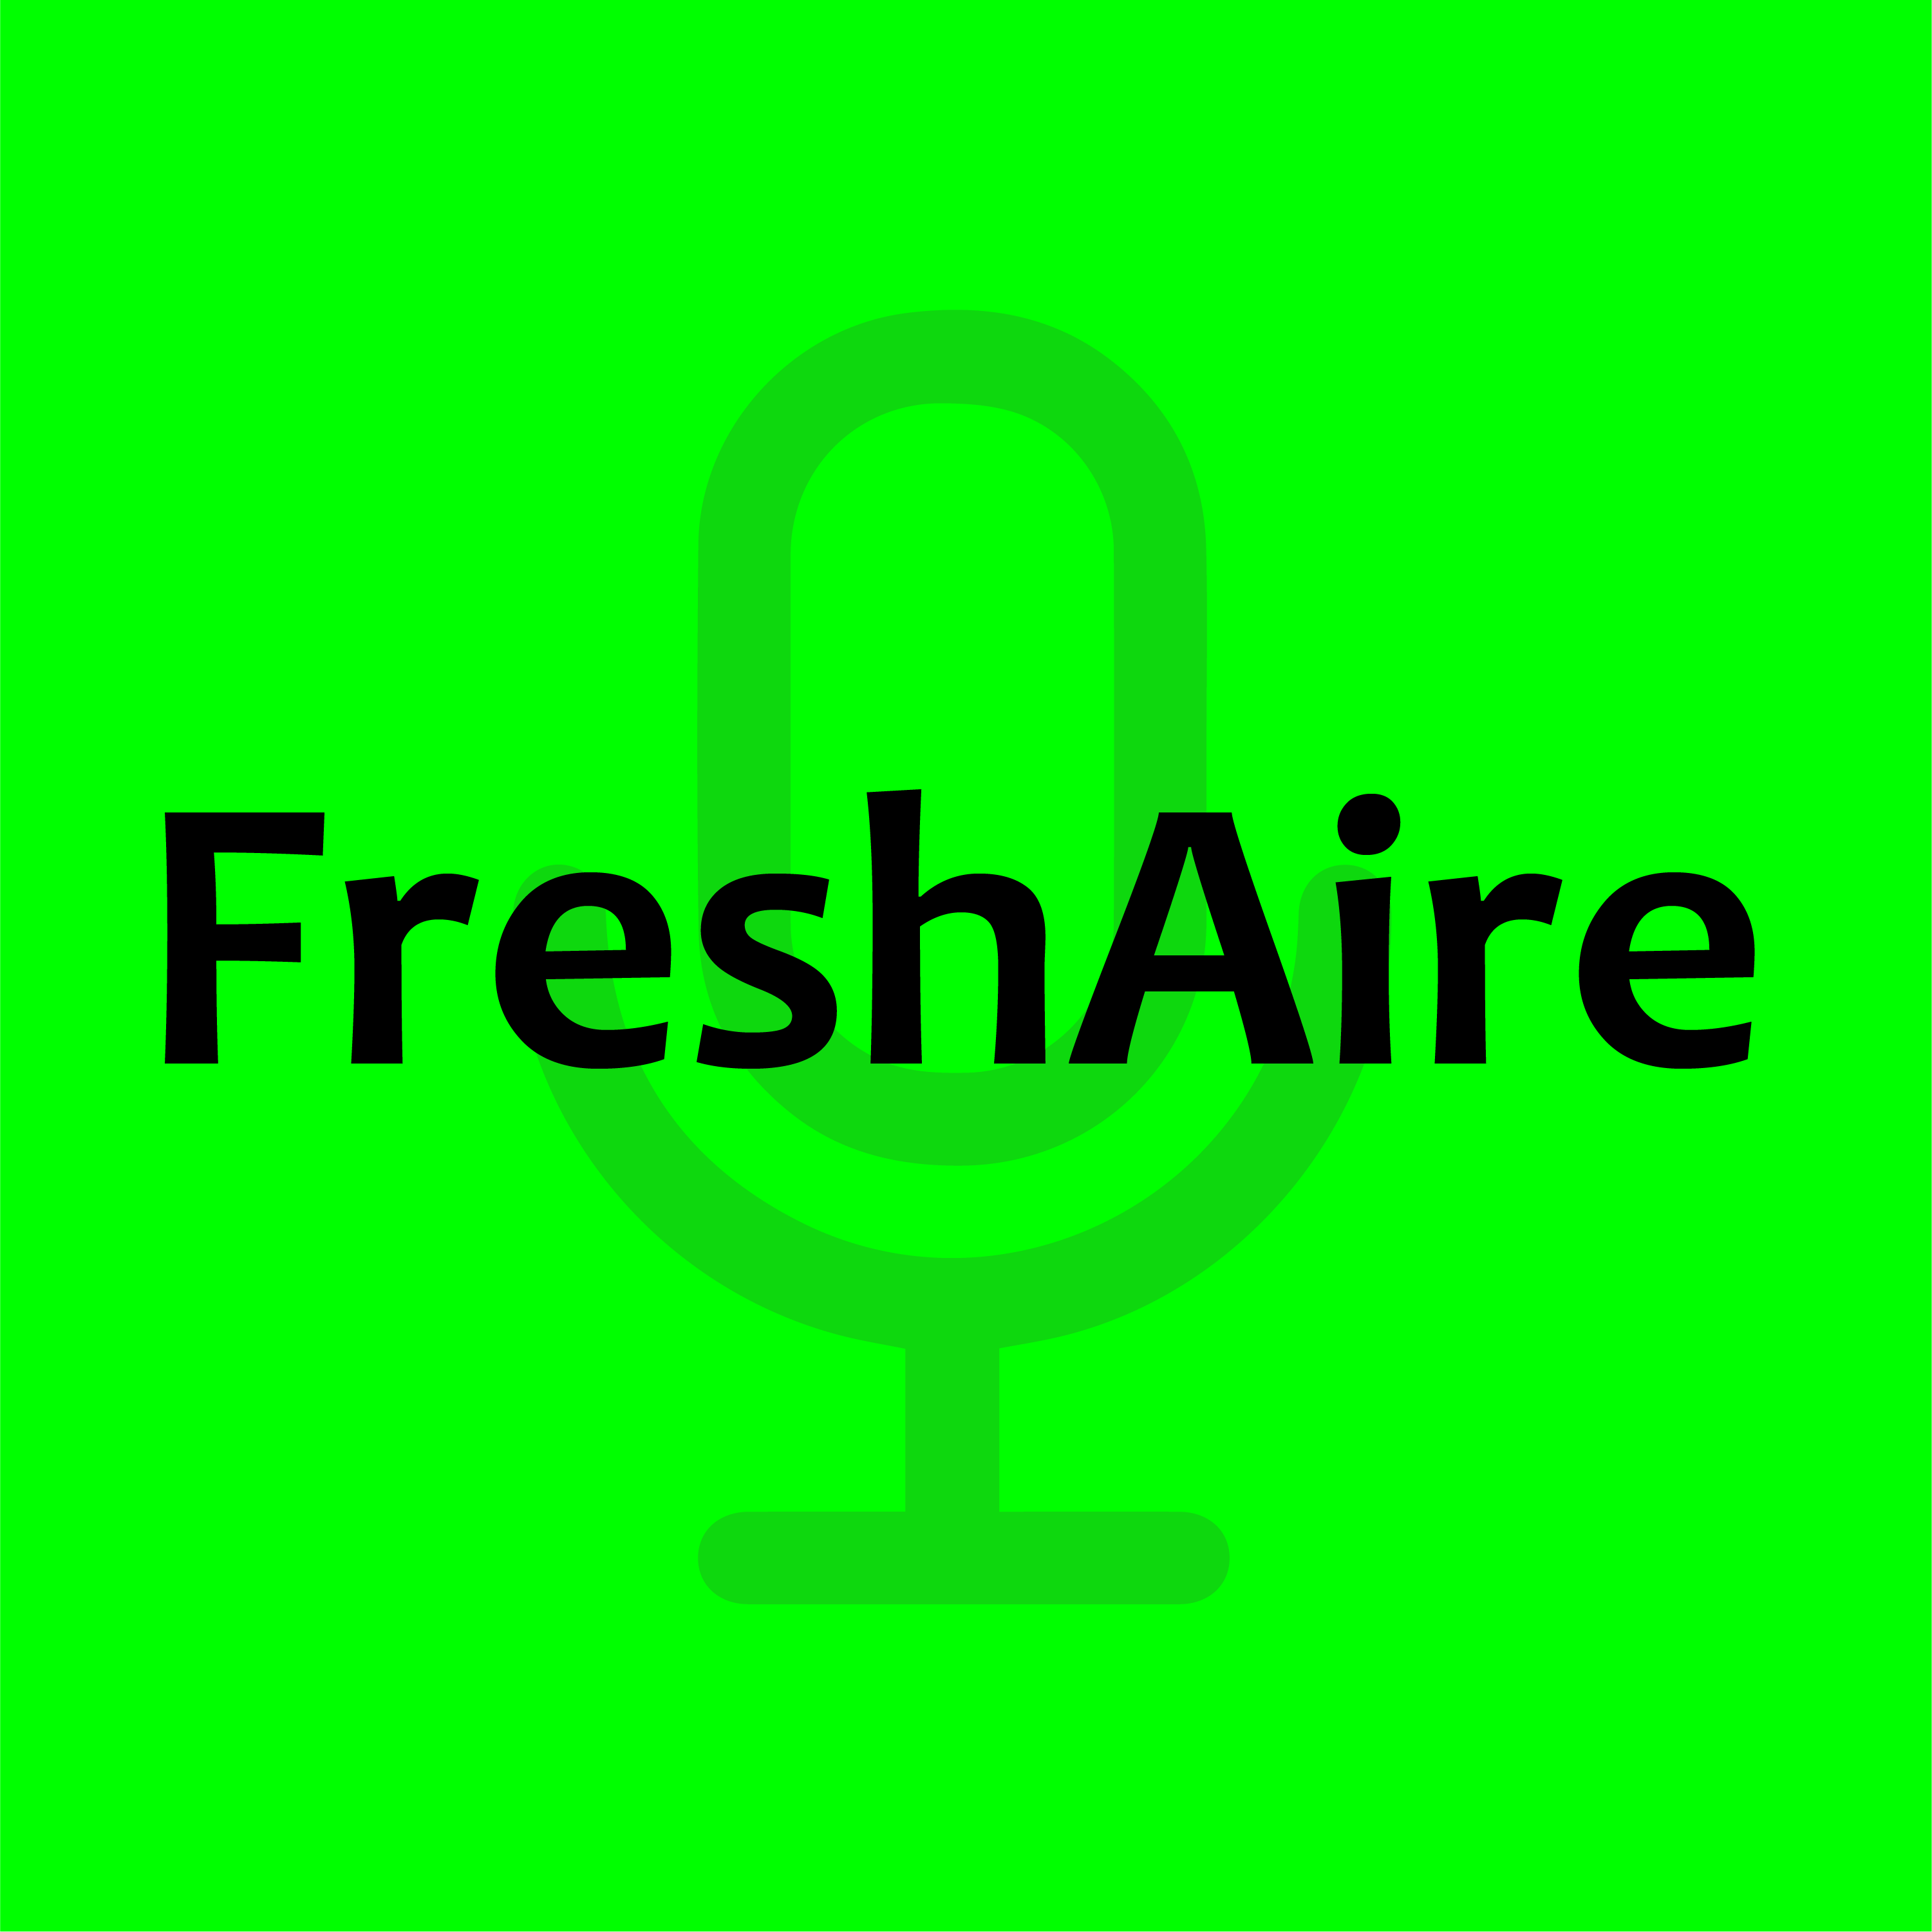 Freshaire logo